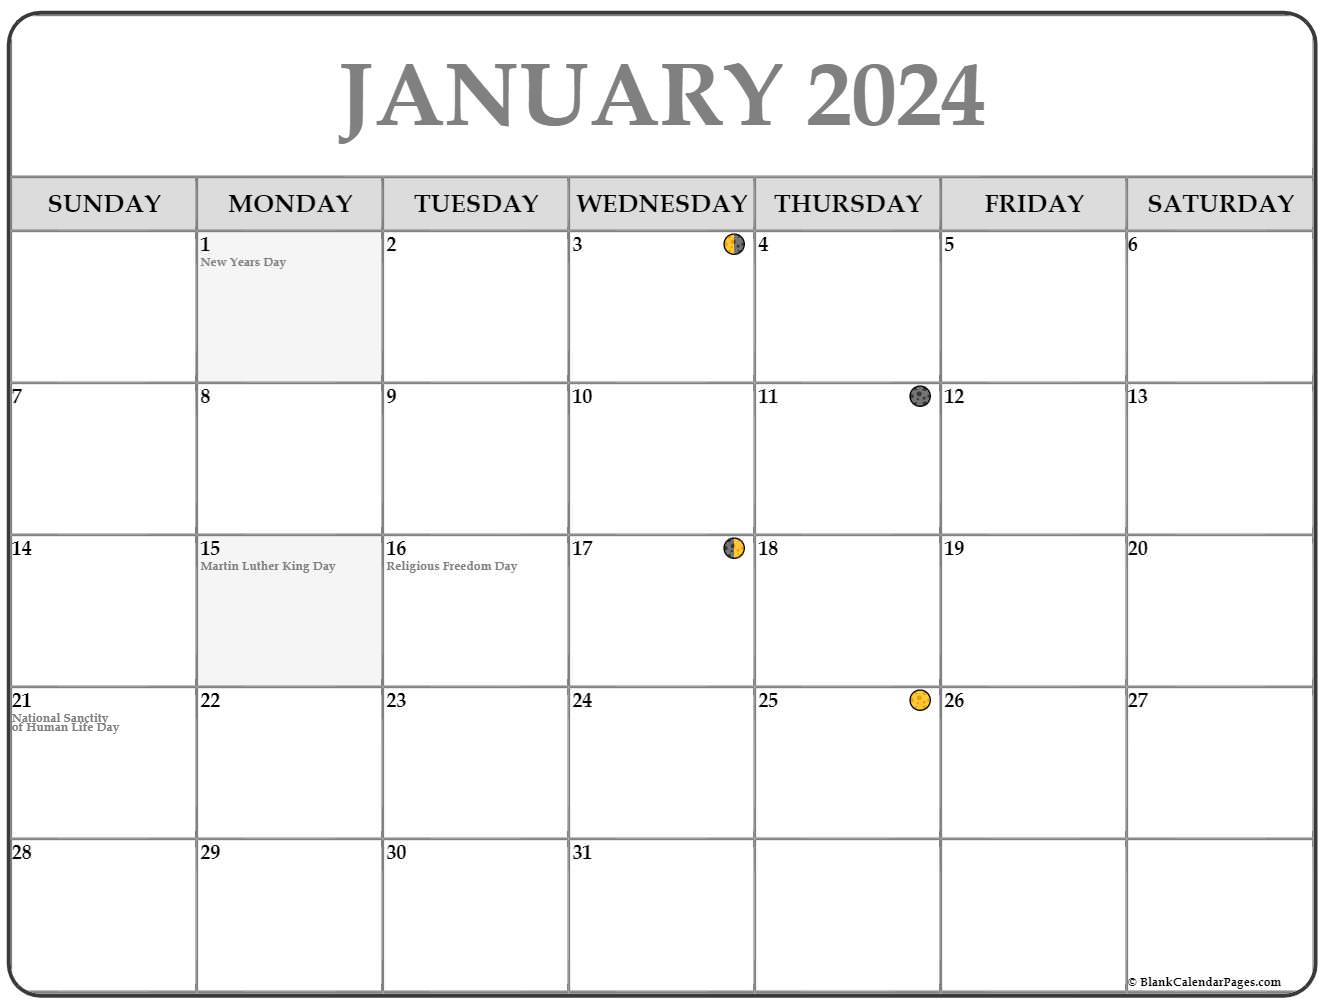 january-2023-moon-phases-2023-calendar-pelajaran